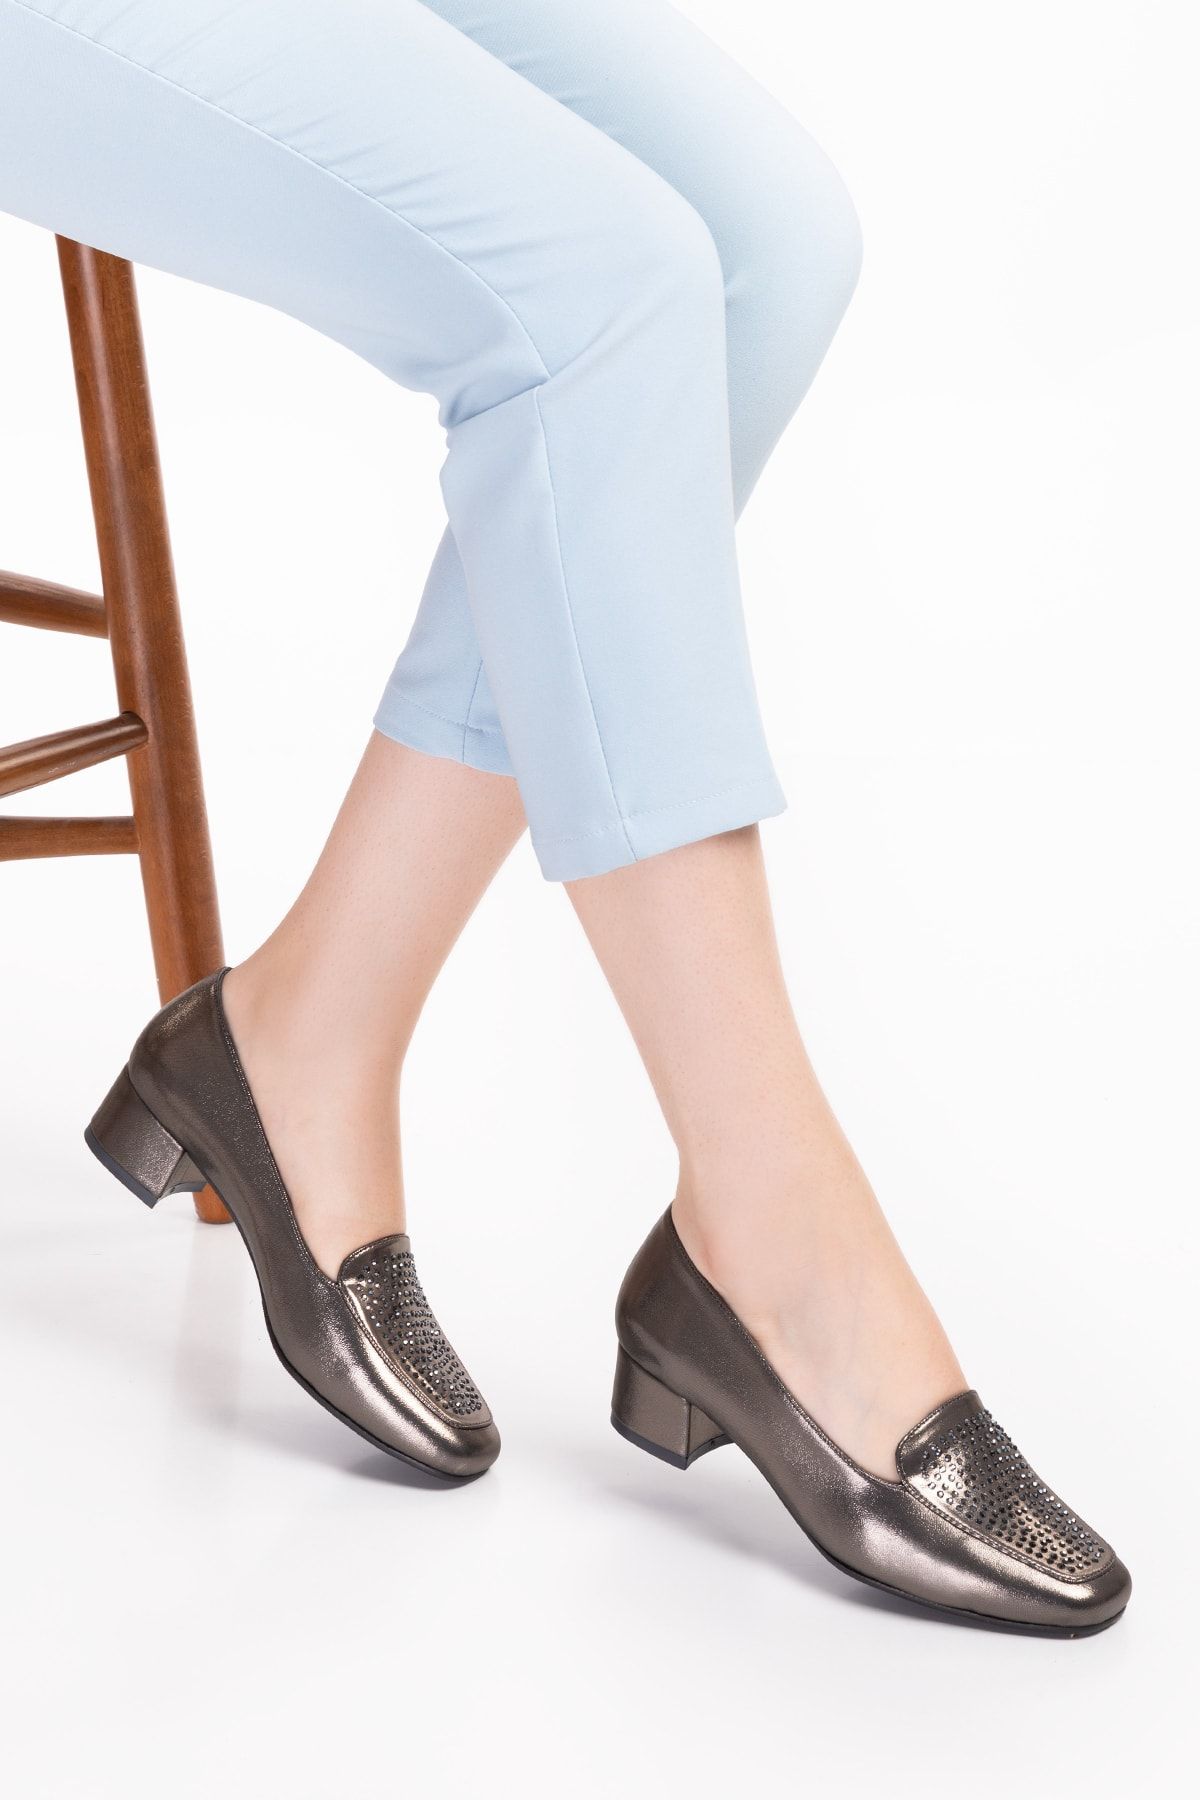 Akgün Terlik Kadın Platin Taş Hakiki Deri Kısa Topuklu Şık Ayakkabı